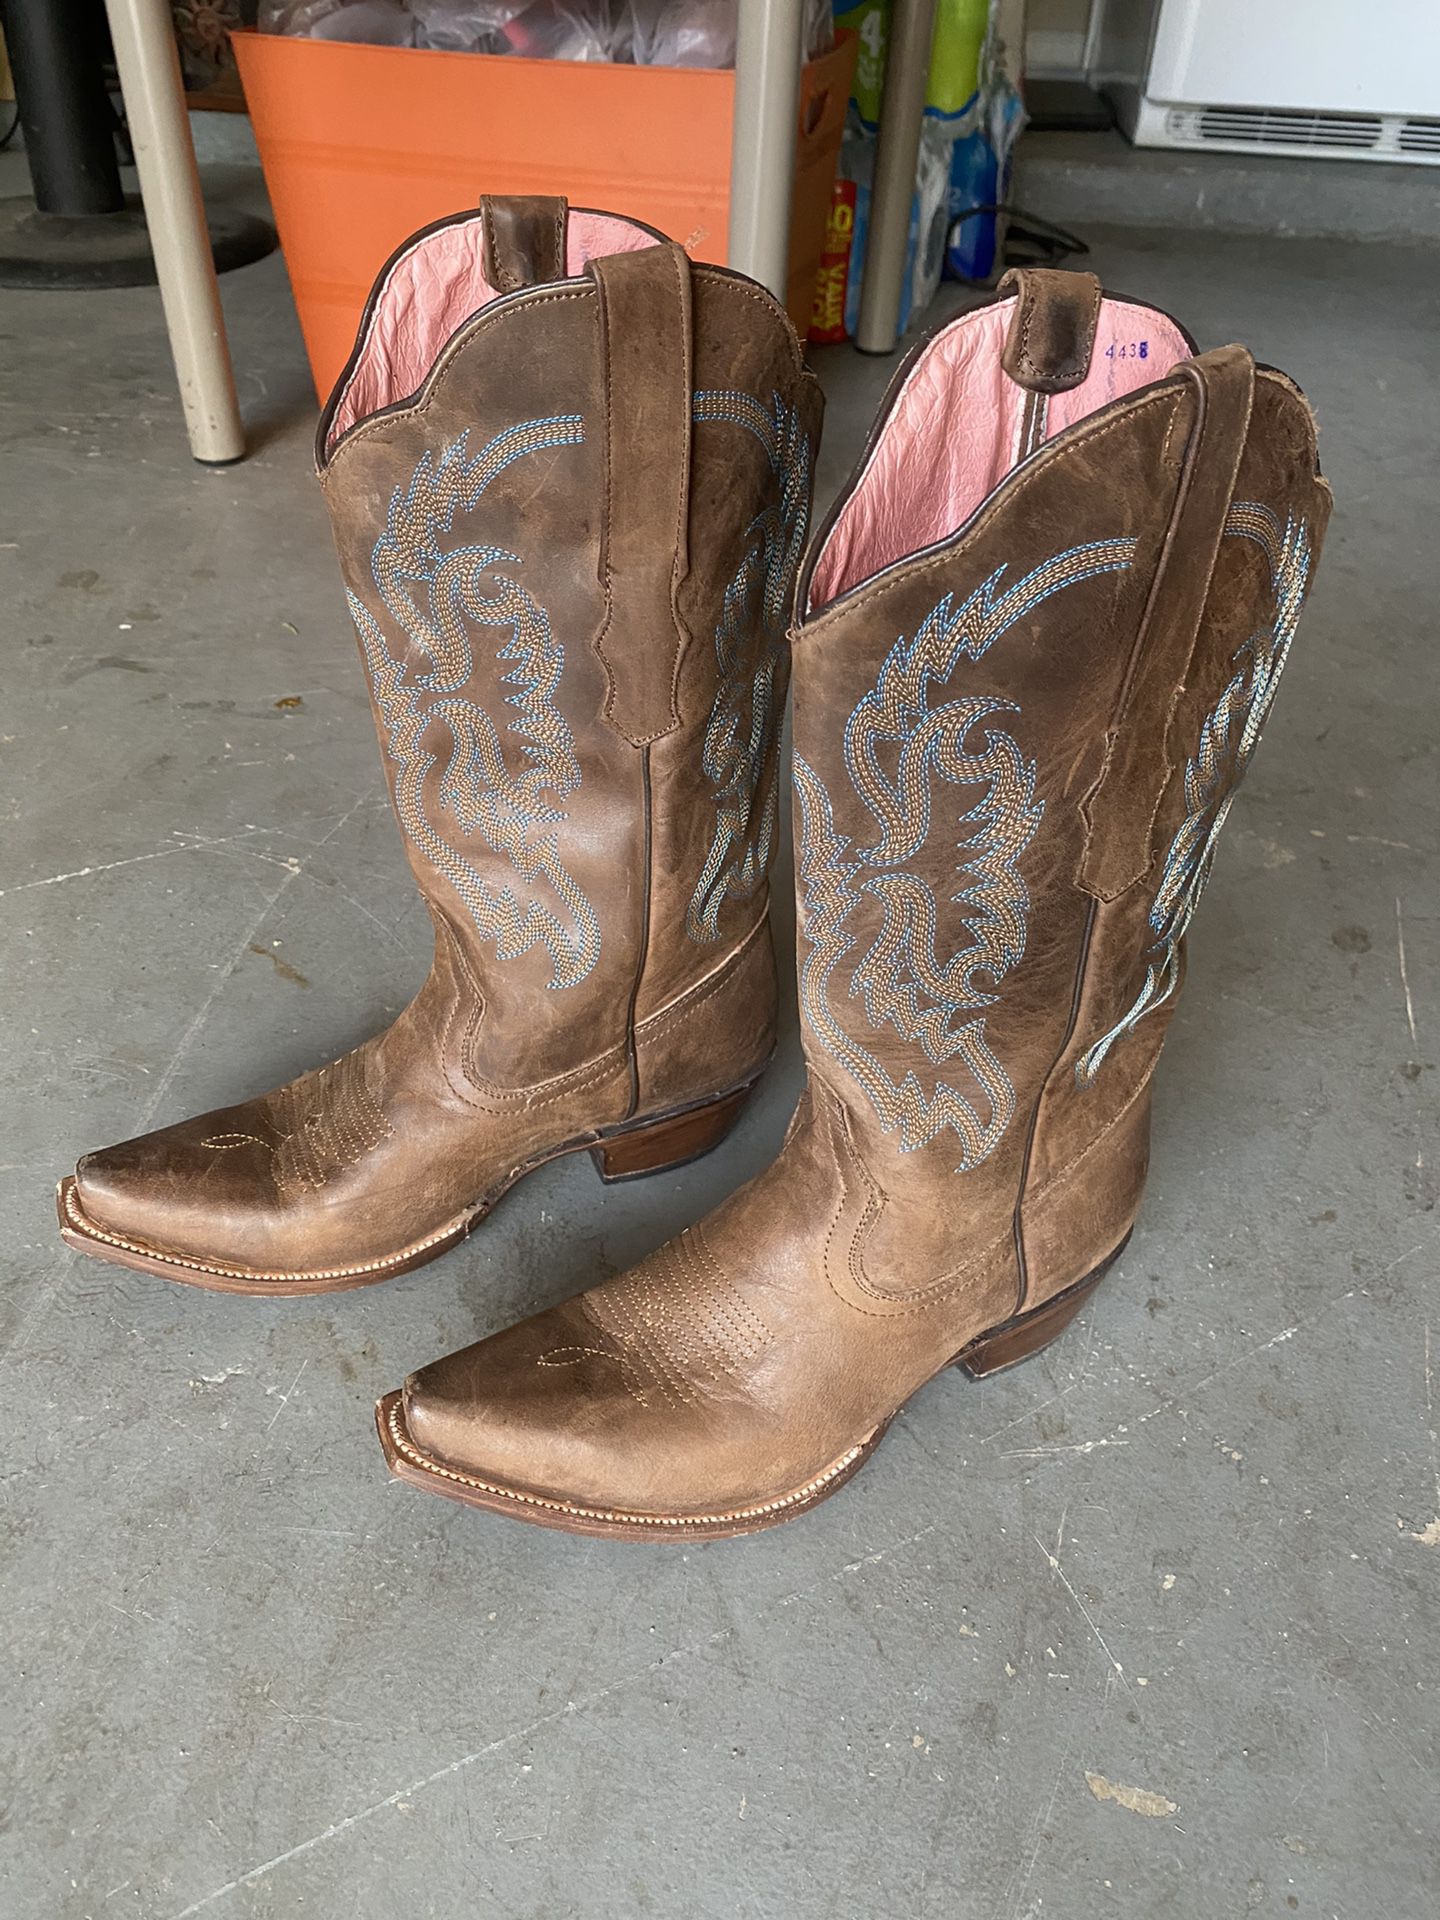 Women’s Cowboy boots for sale